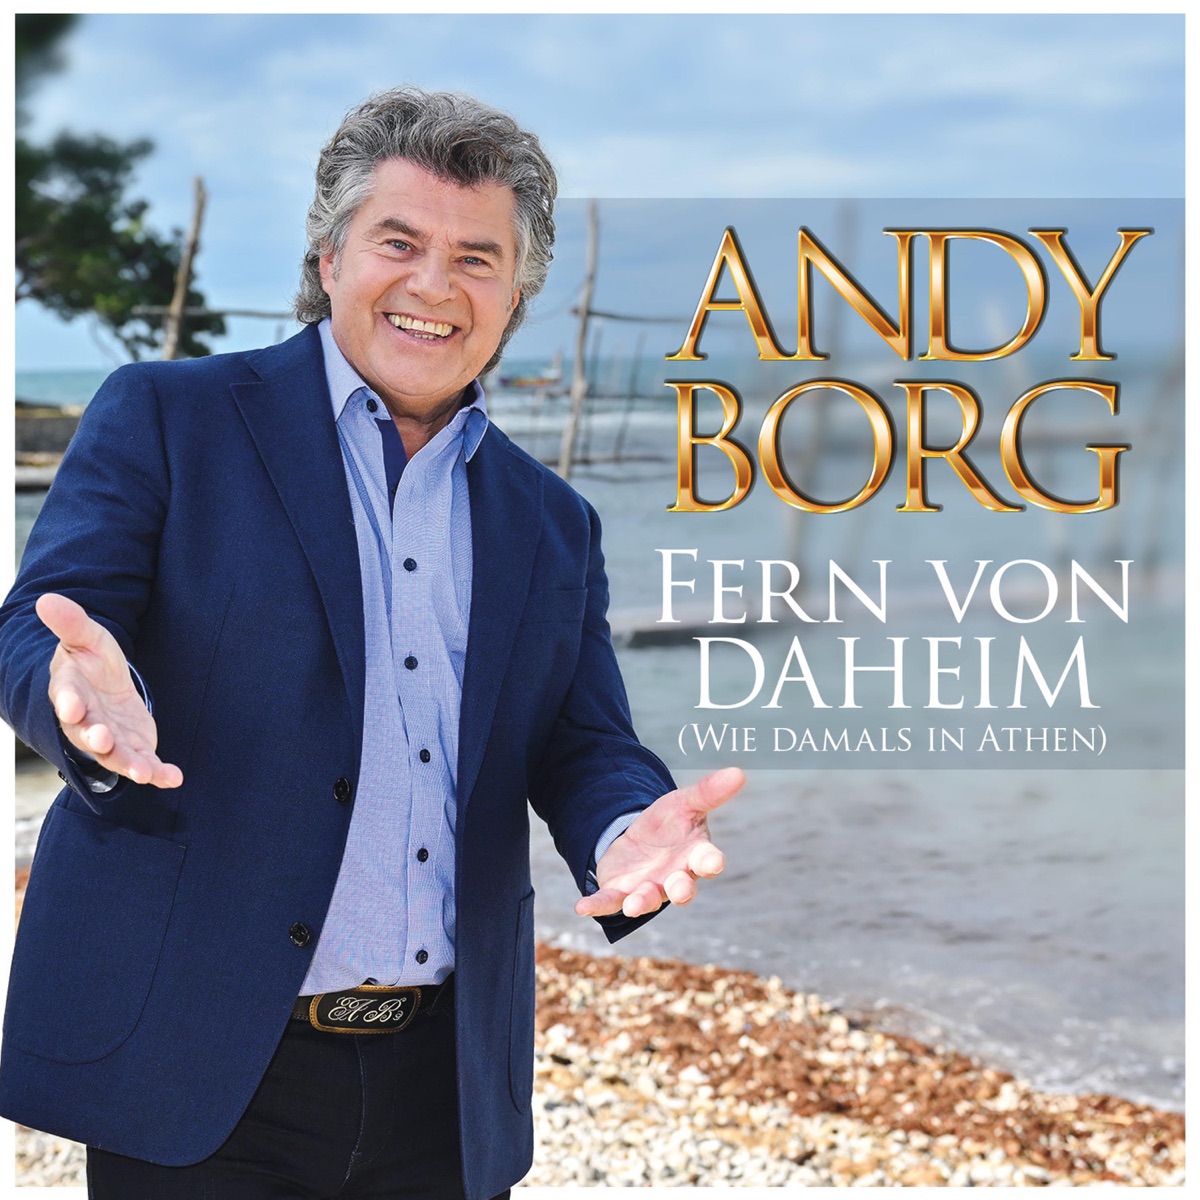 Andy Borg - Fern von daheim (wie damals in Athen) (2023) 